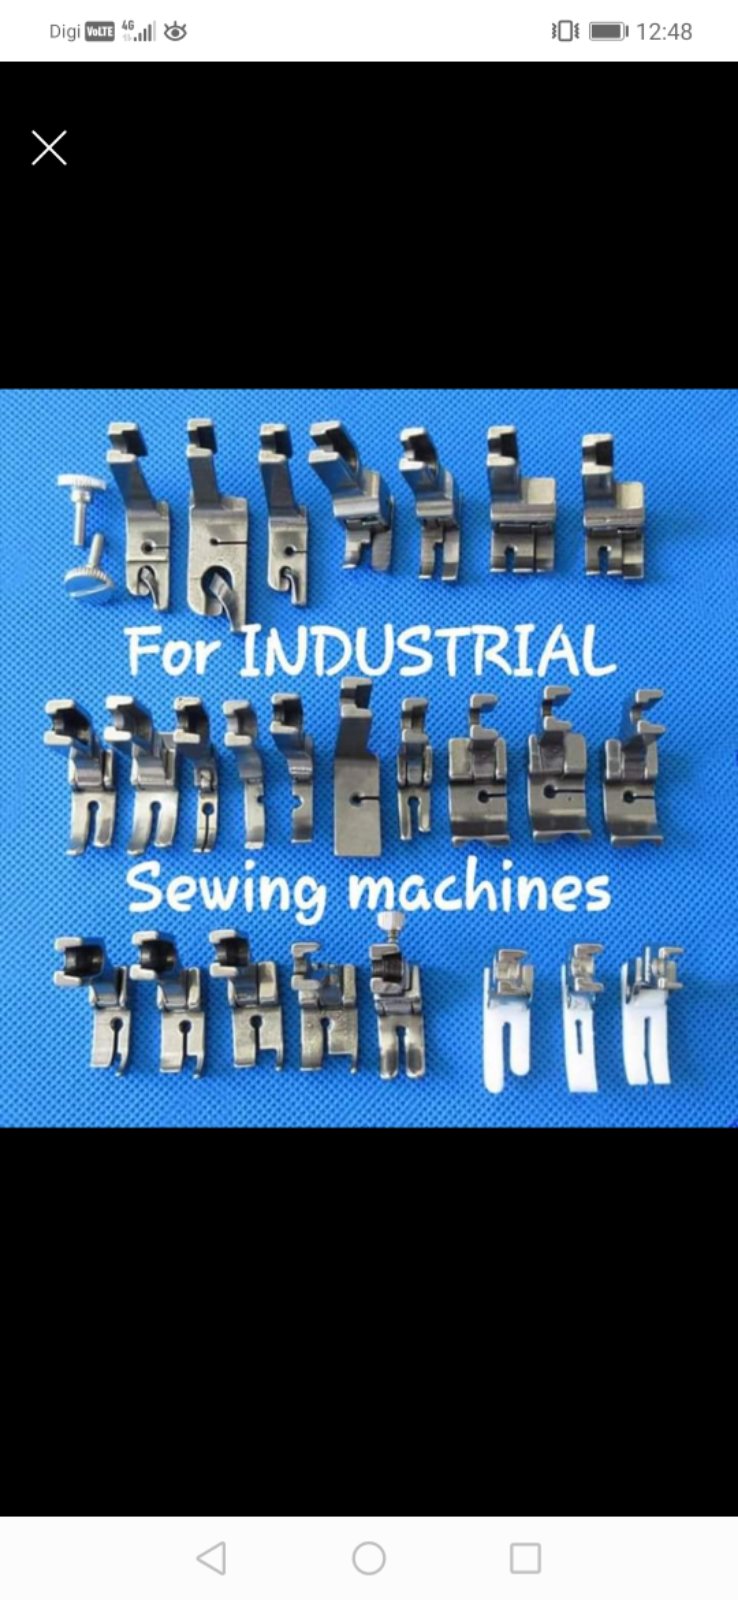 Industrial Hi Speed Sewing machine Preser Foot! 